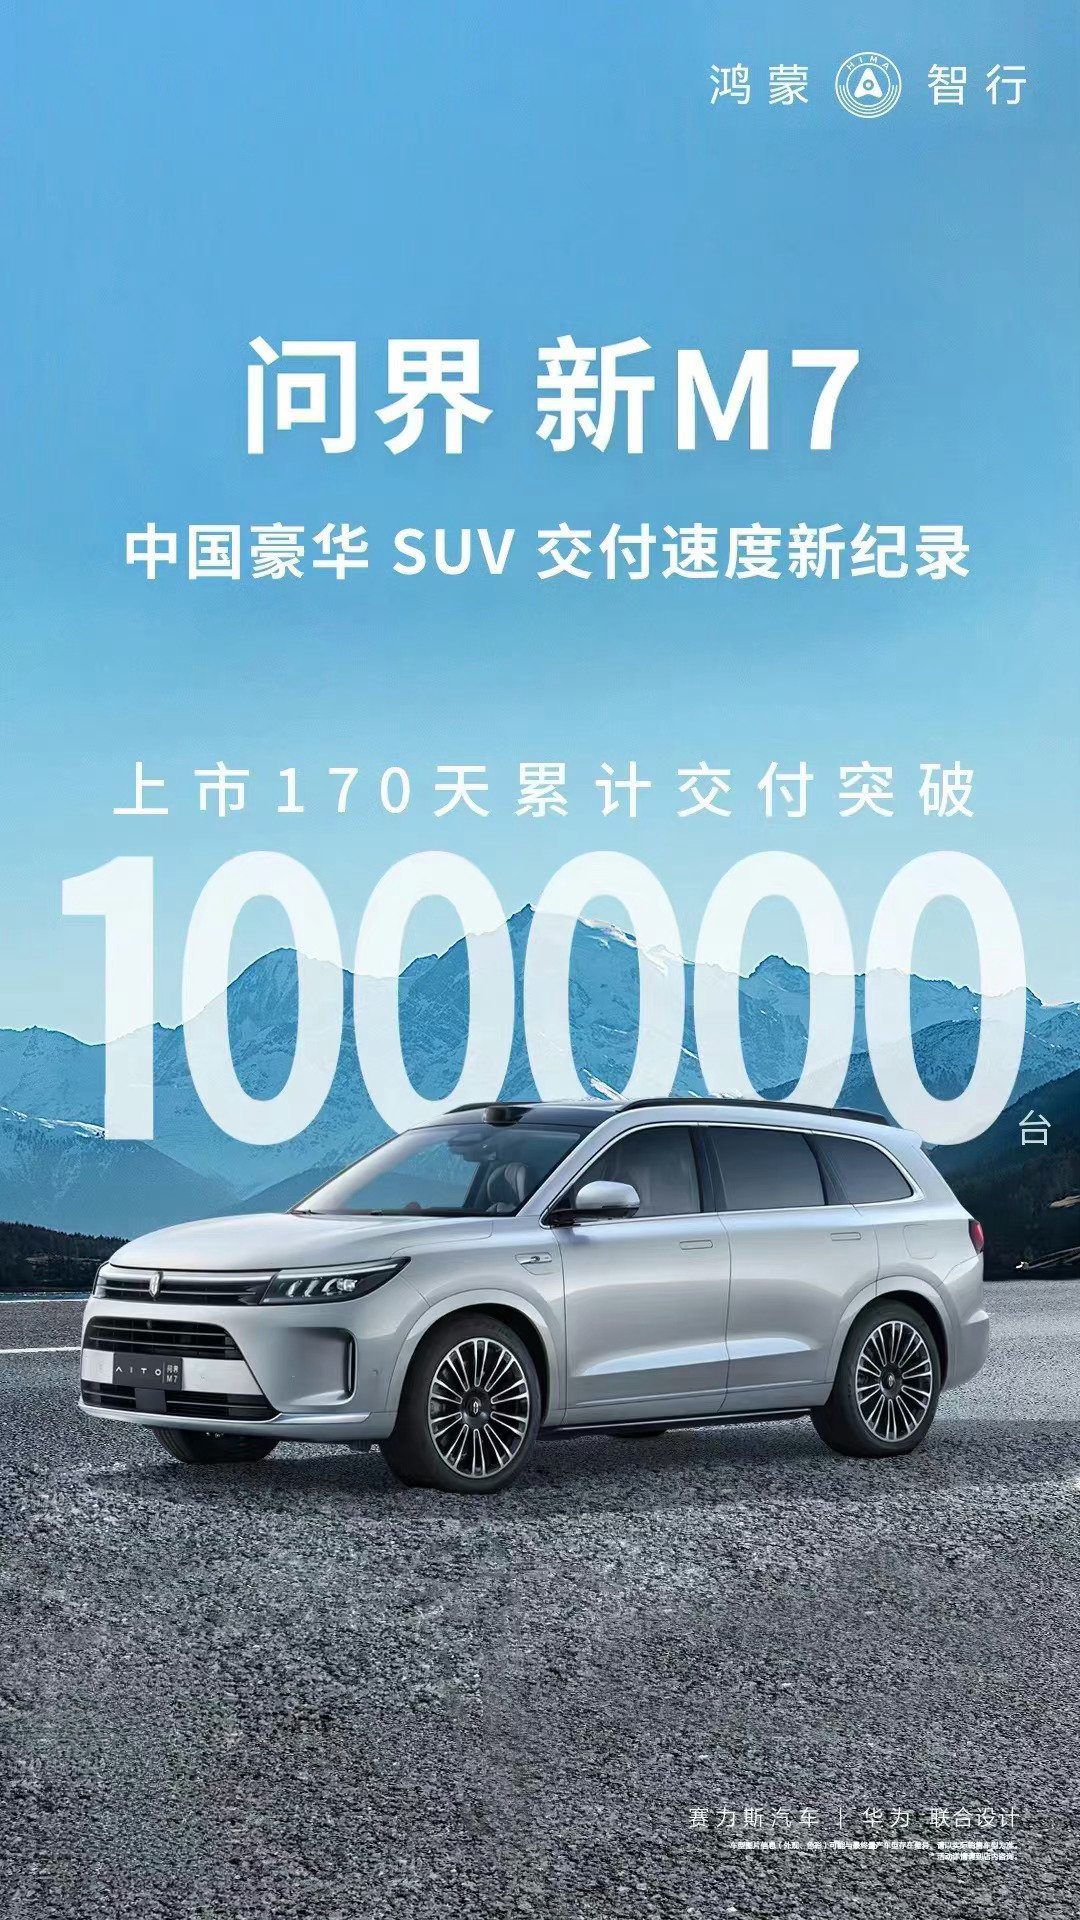 【愛車基地】AITO 問界新 M7 車型上市 170 天累計交付超 10 萬臺